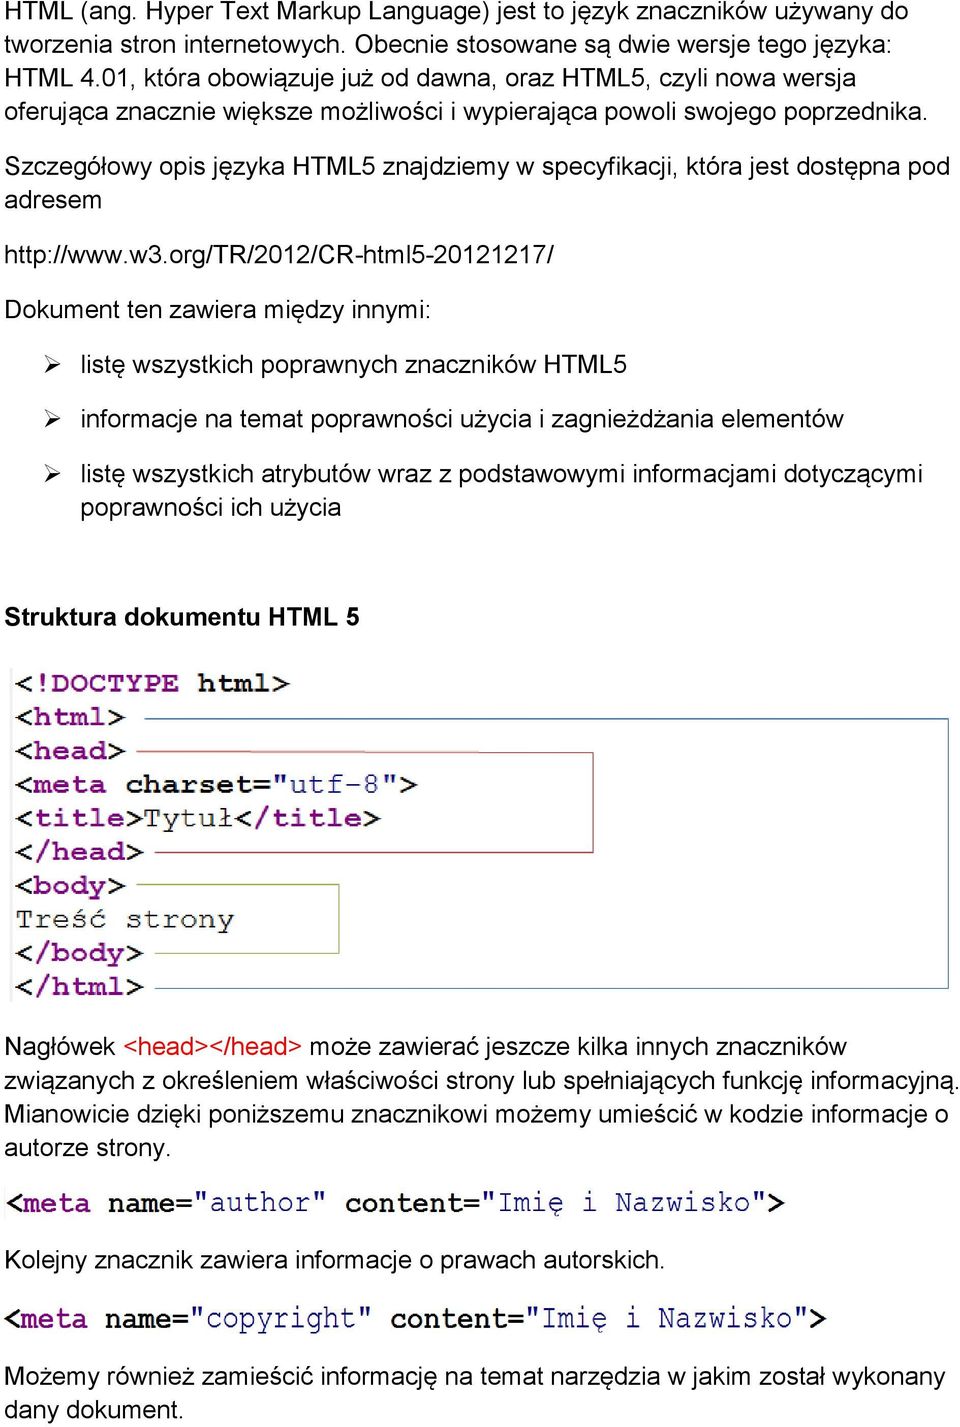 Szczegółowy opis języka HTML5 znajdziemy w specyfikacji, która jest dostępna pod adresem http://www.w3.